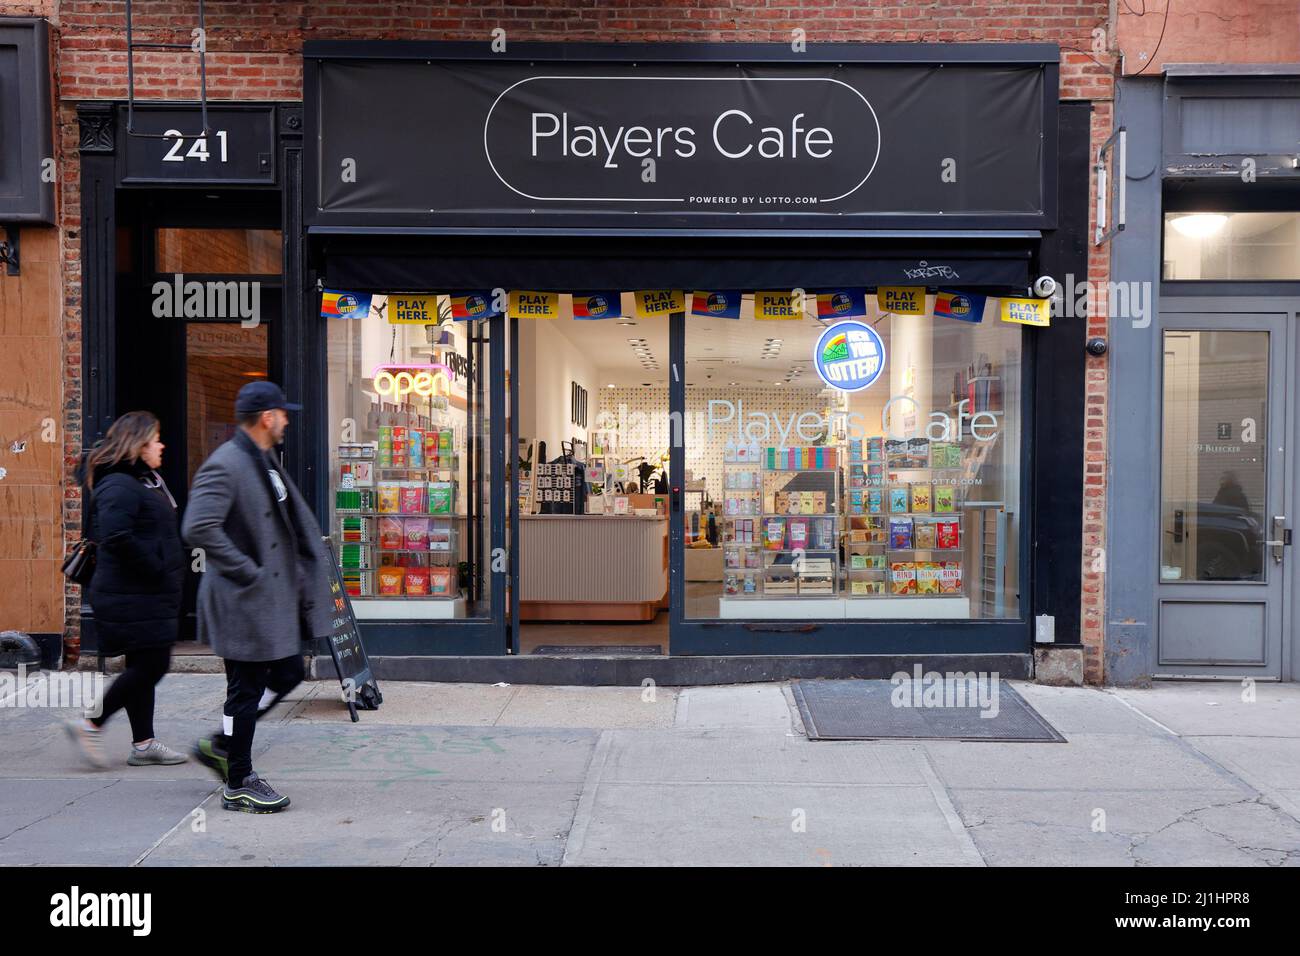 Players Cafe, 241 Bleecker St, New York, NYC boutique photo d'un concept de magasin de proximité par lotto.com dans le Greenwich Village Banque D'Images